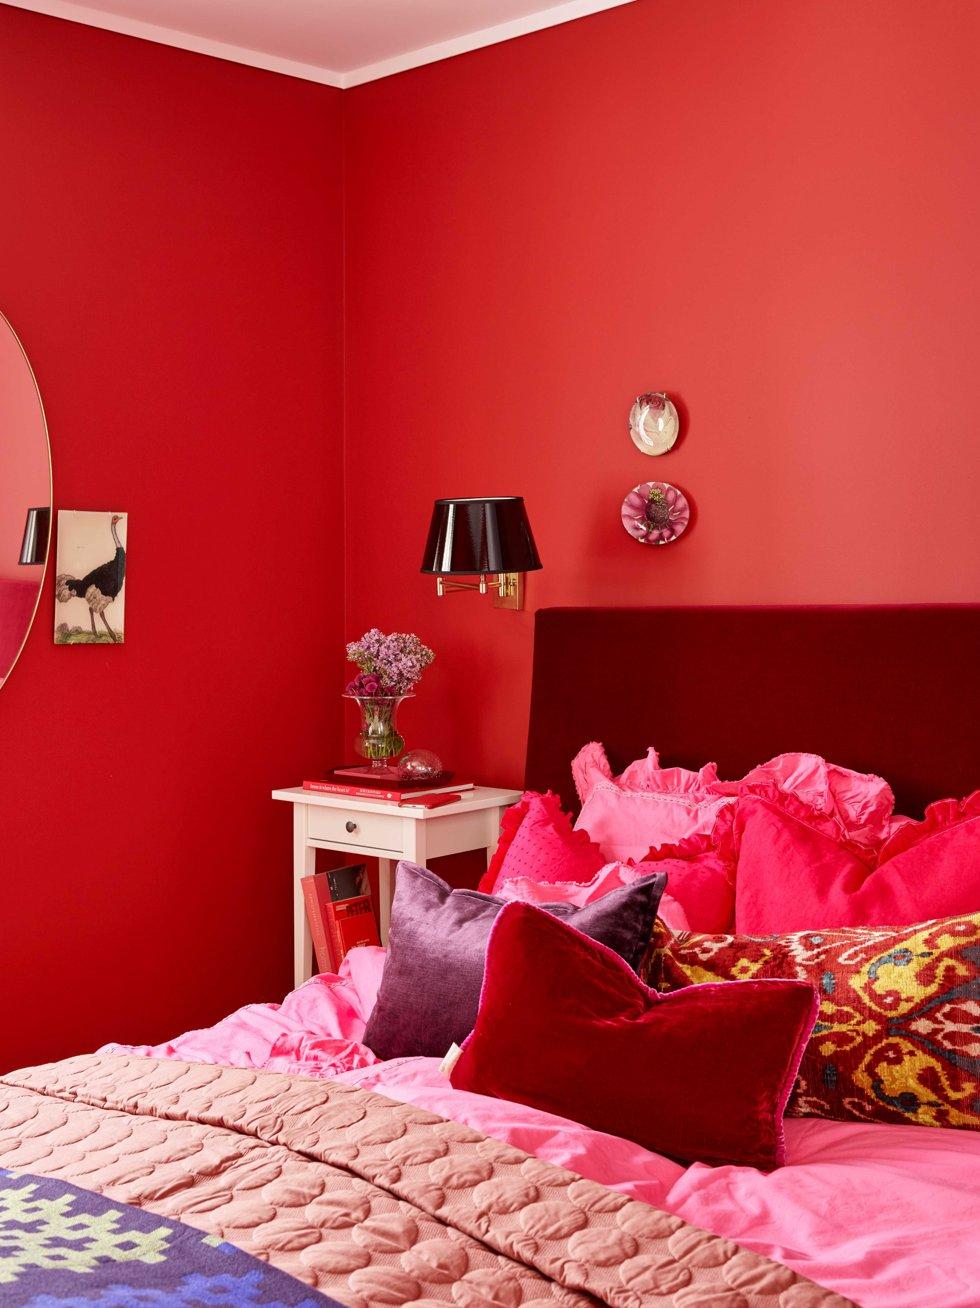 The Red Room: per molti, la stanza rossa è completamente sbagliata, ma se ami il rosso, stai guidando!  Foto: colorato